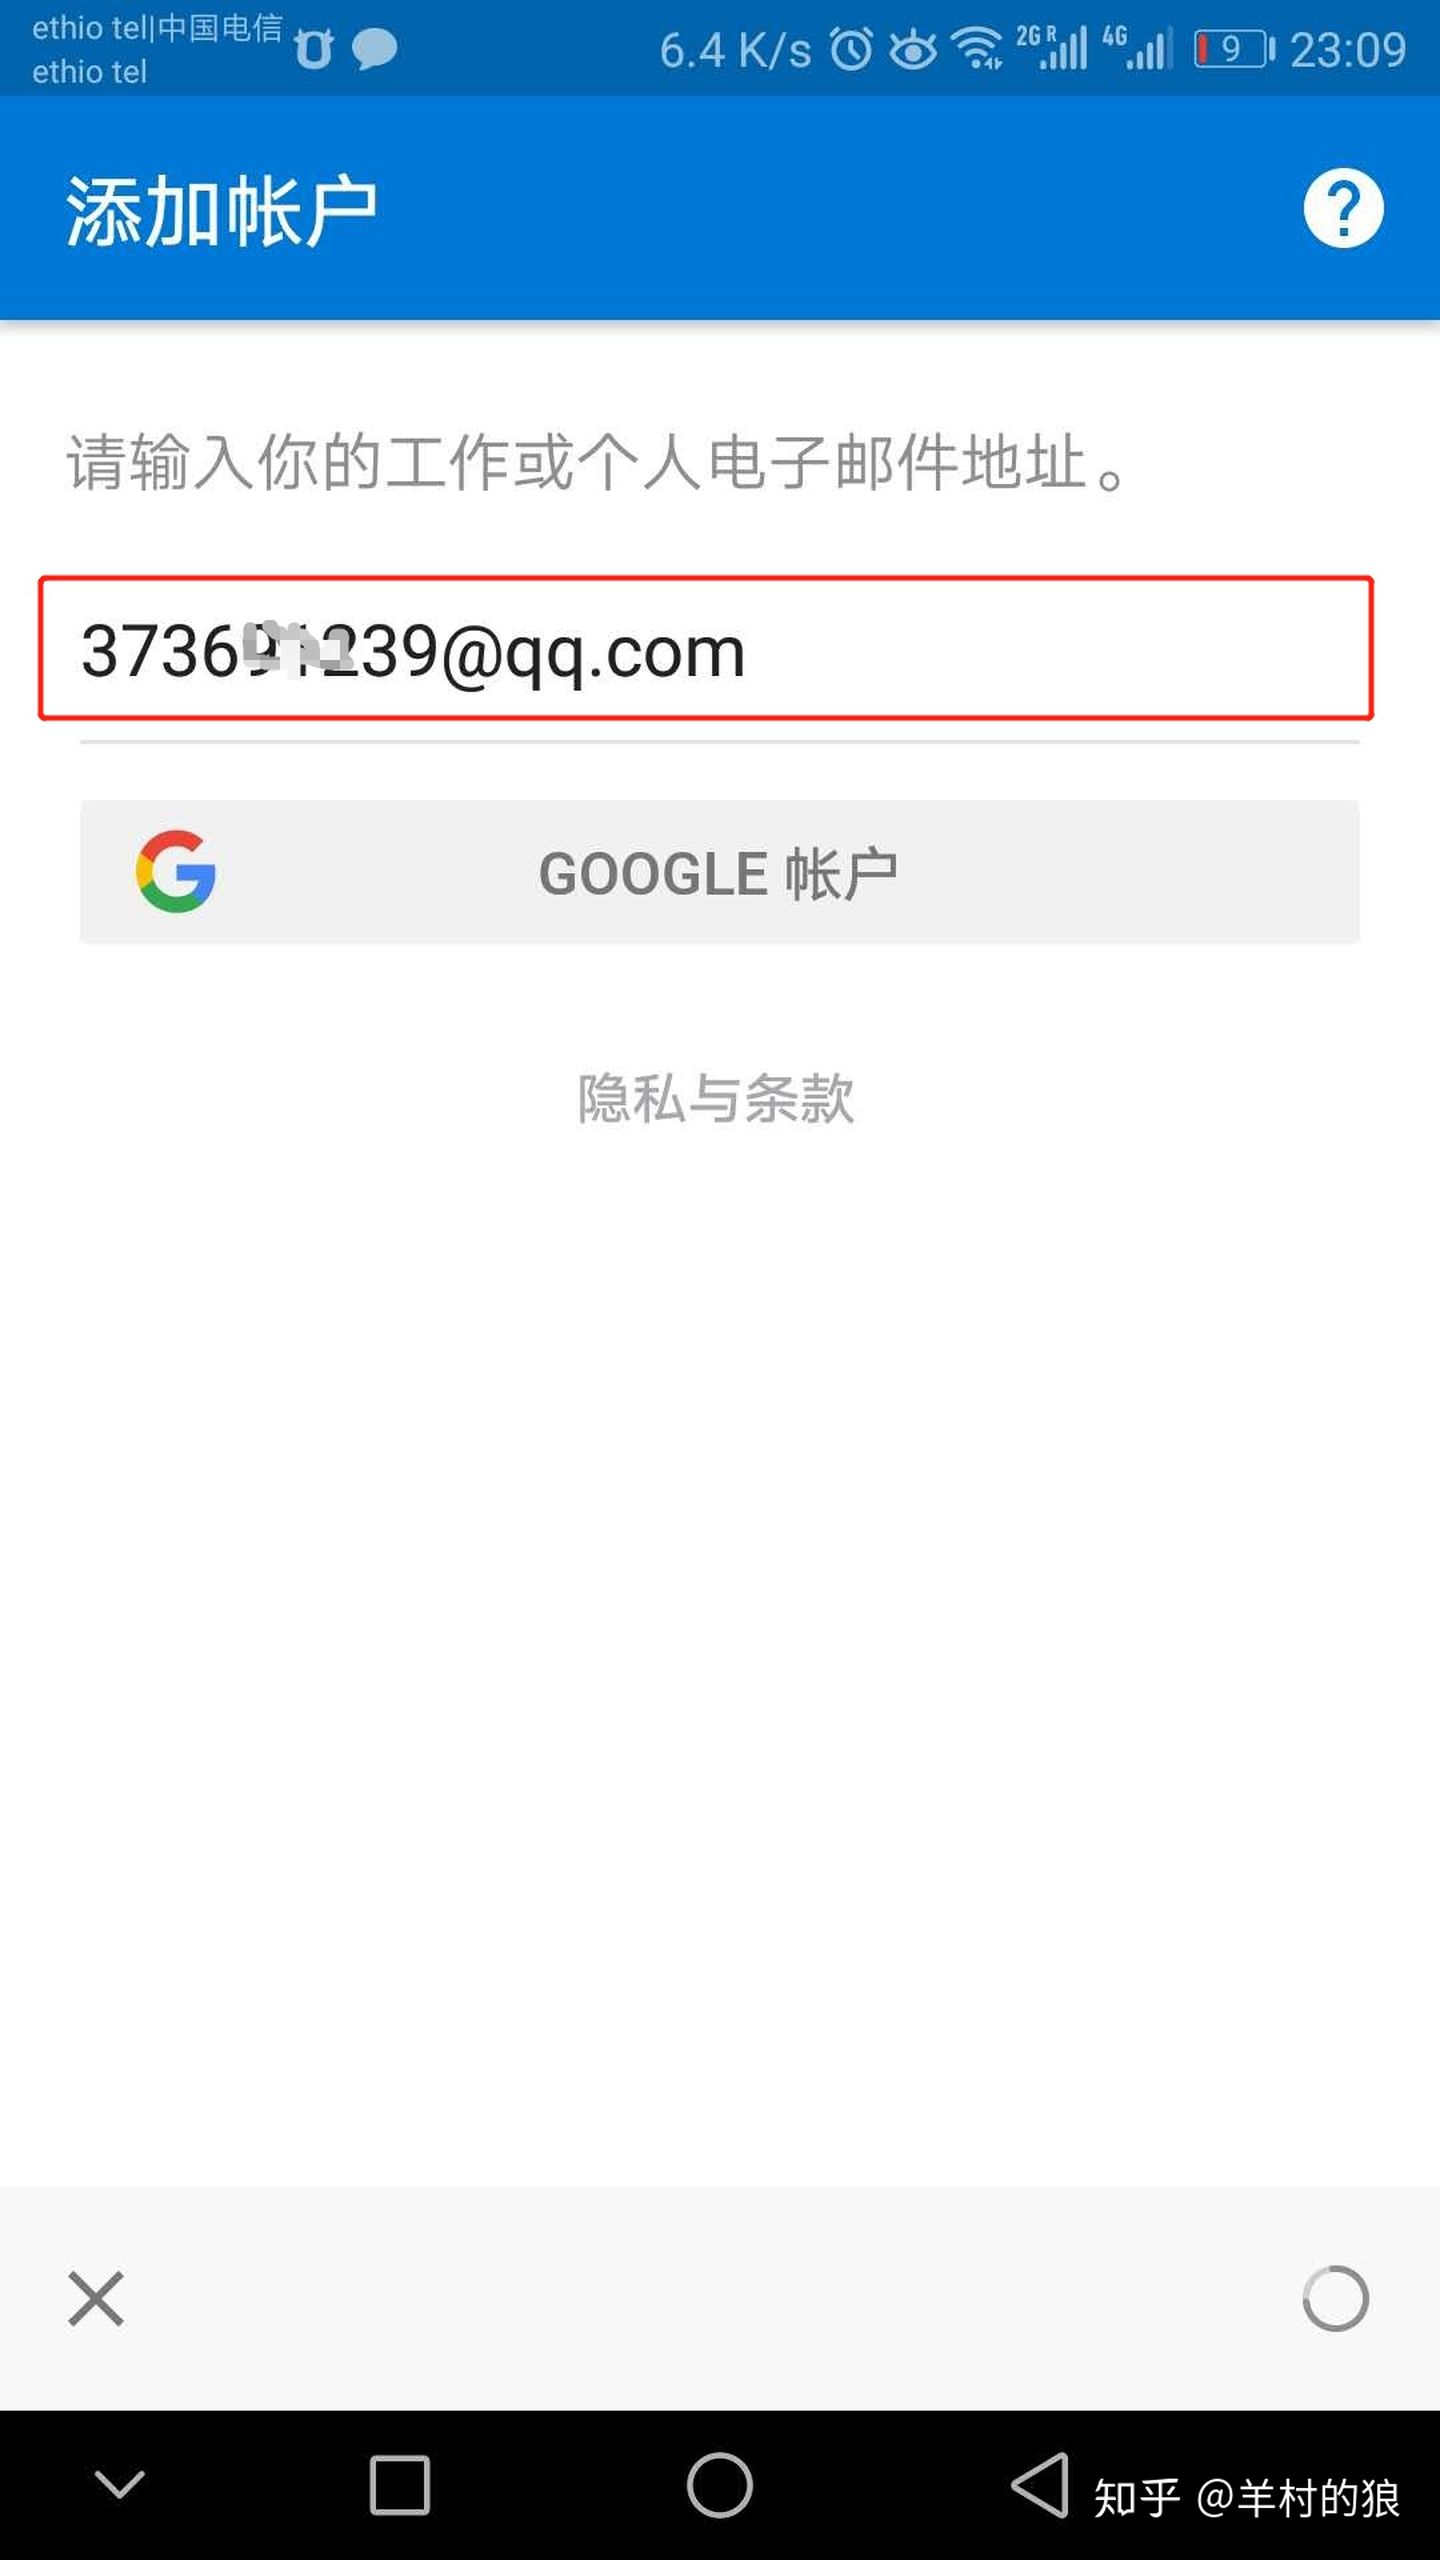 如何用QQ邮箱地址在手机登入Outlook客户端